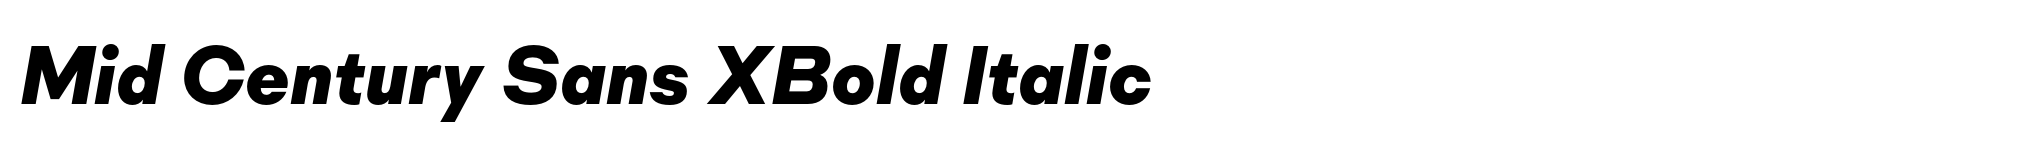 Mid Century Sans XBold Italic image